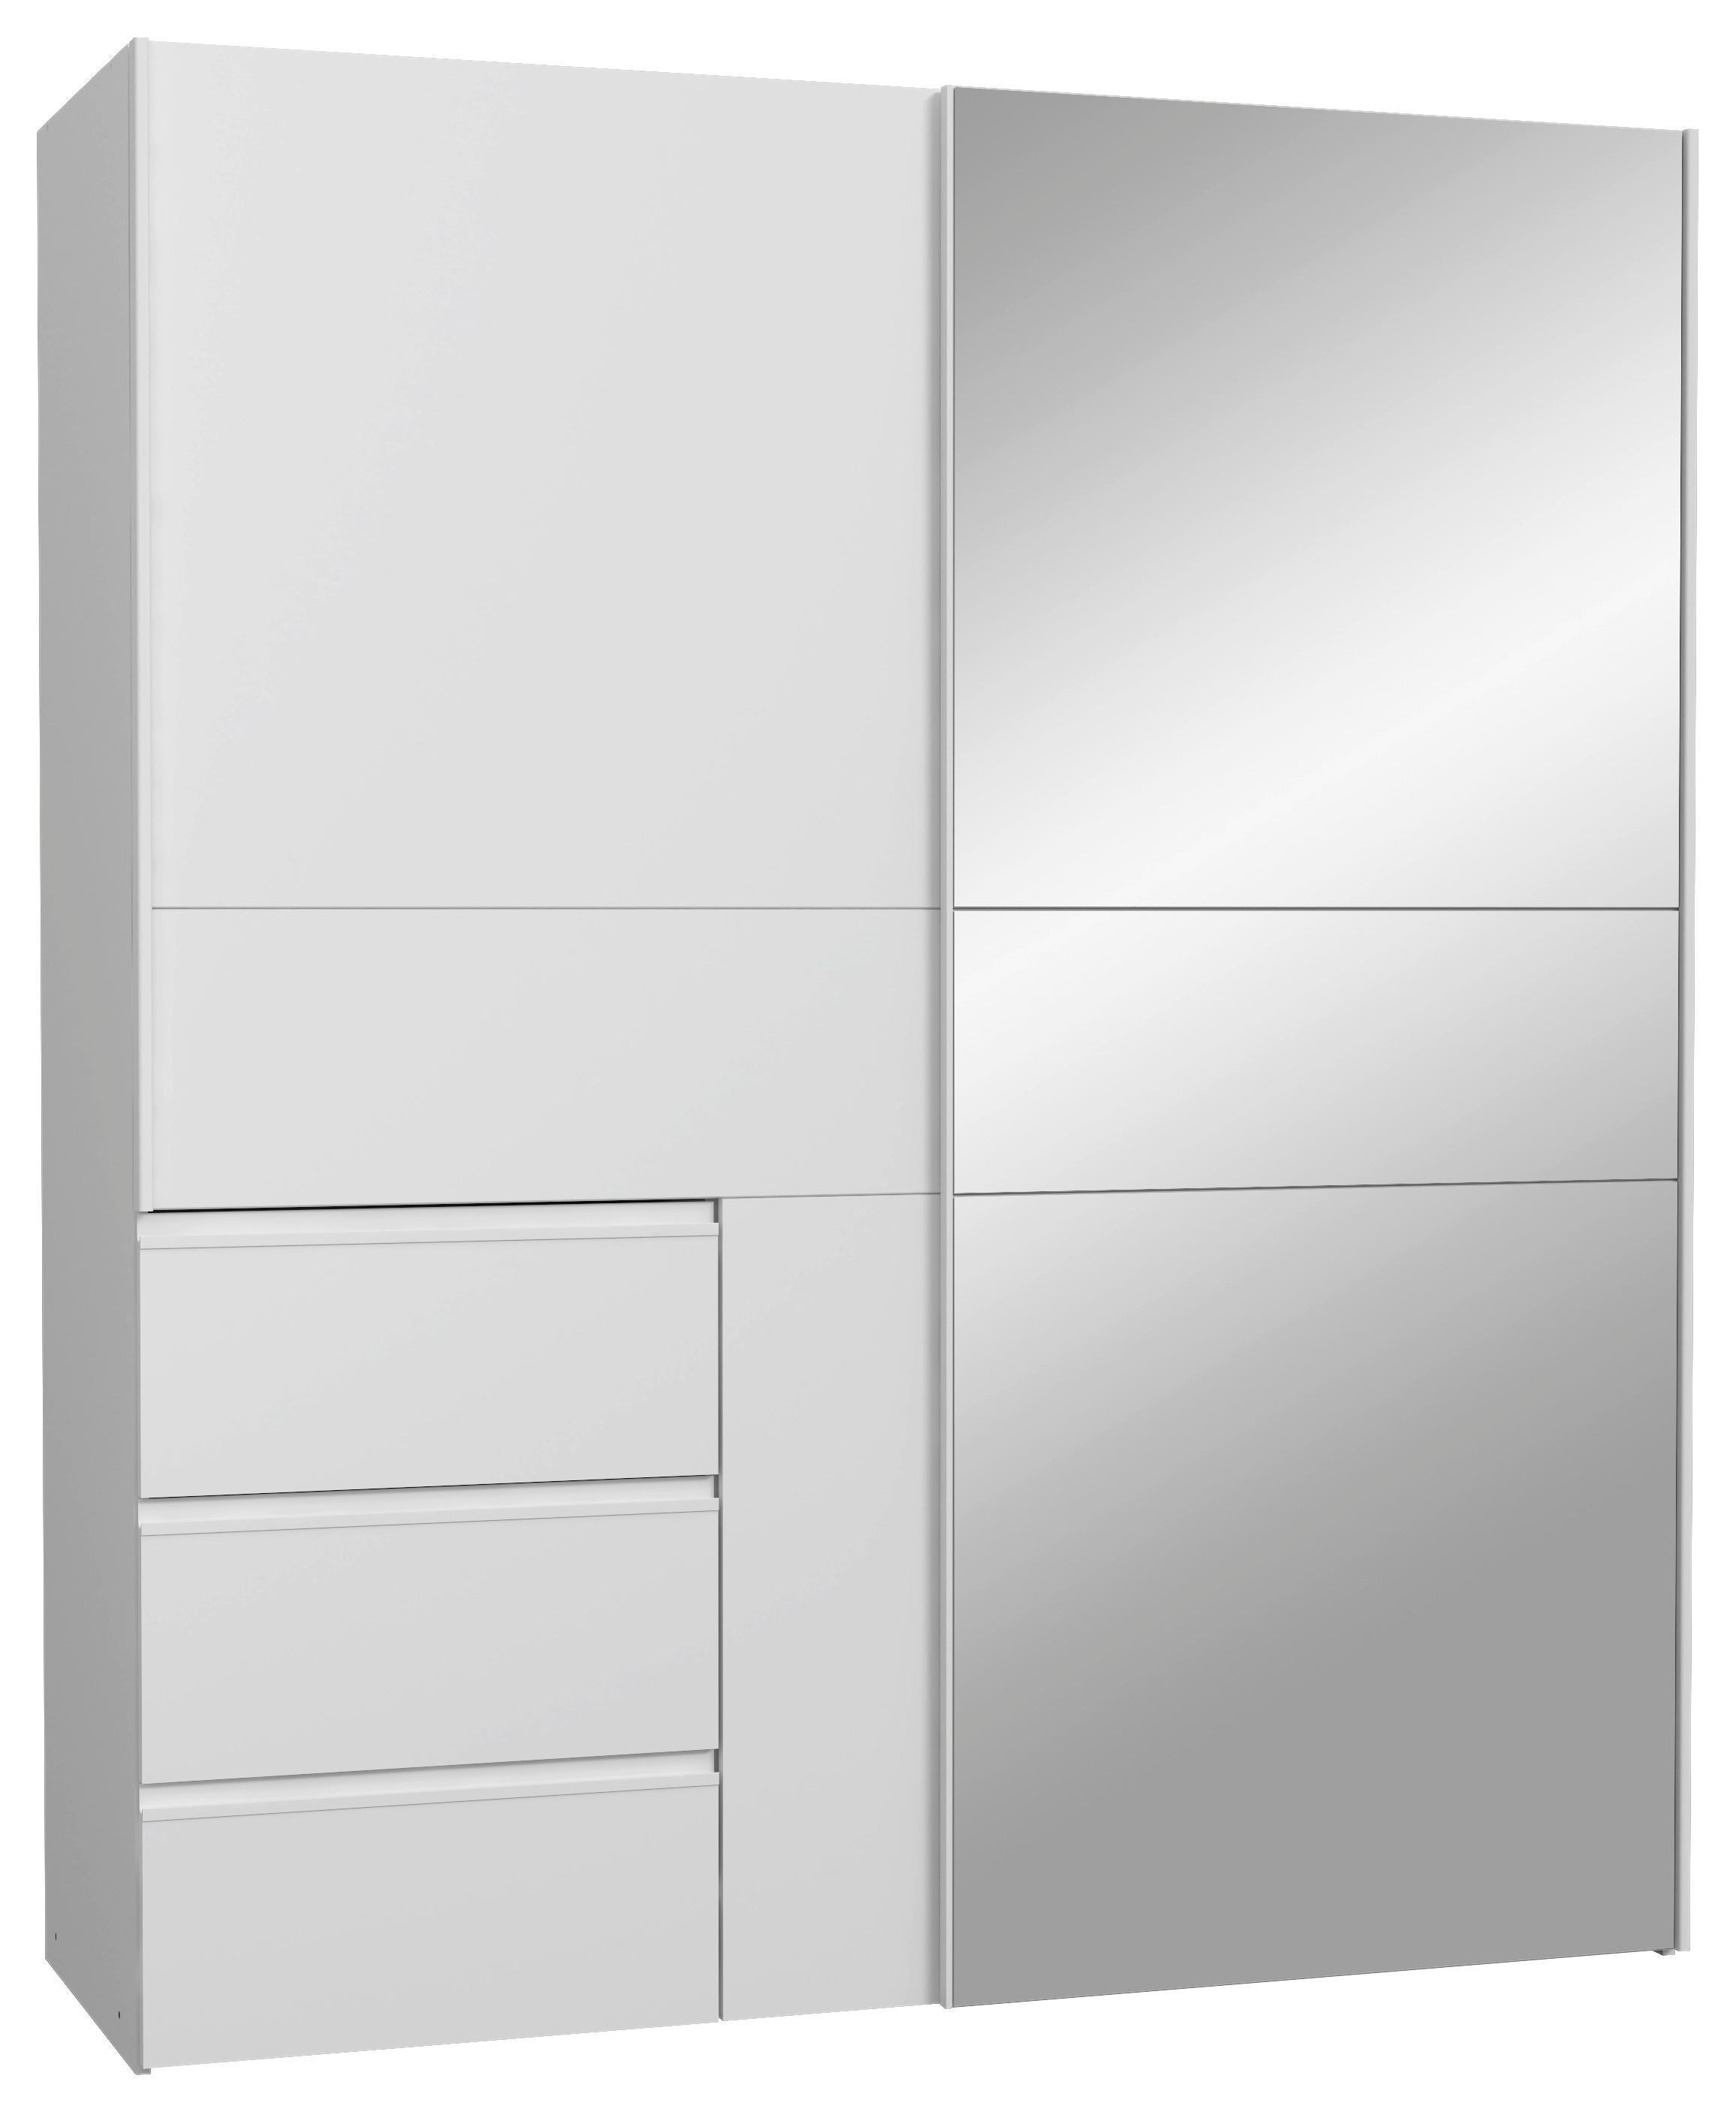 SCHWEBETÜRENSCHRANK 2-türig Weiß  - Alufarben/Weiß, Basics, Holzwerkstoff/Metall (170/200/61cm) - MID.YOU